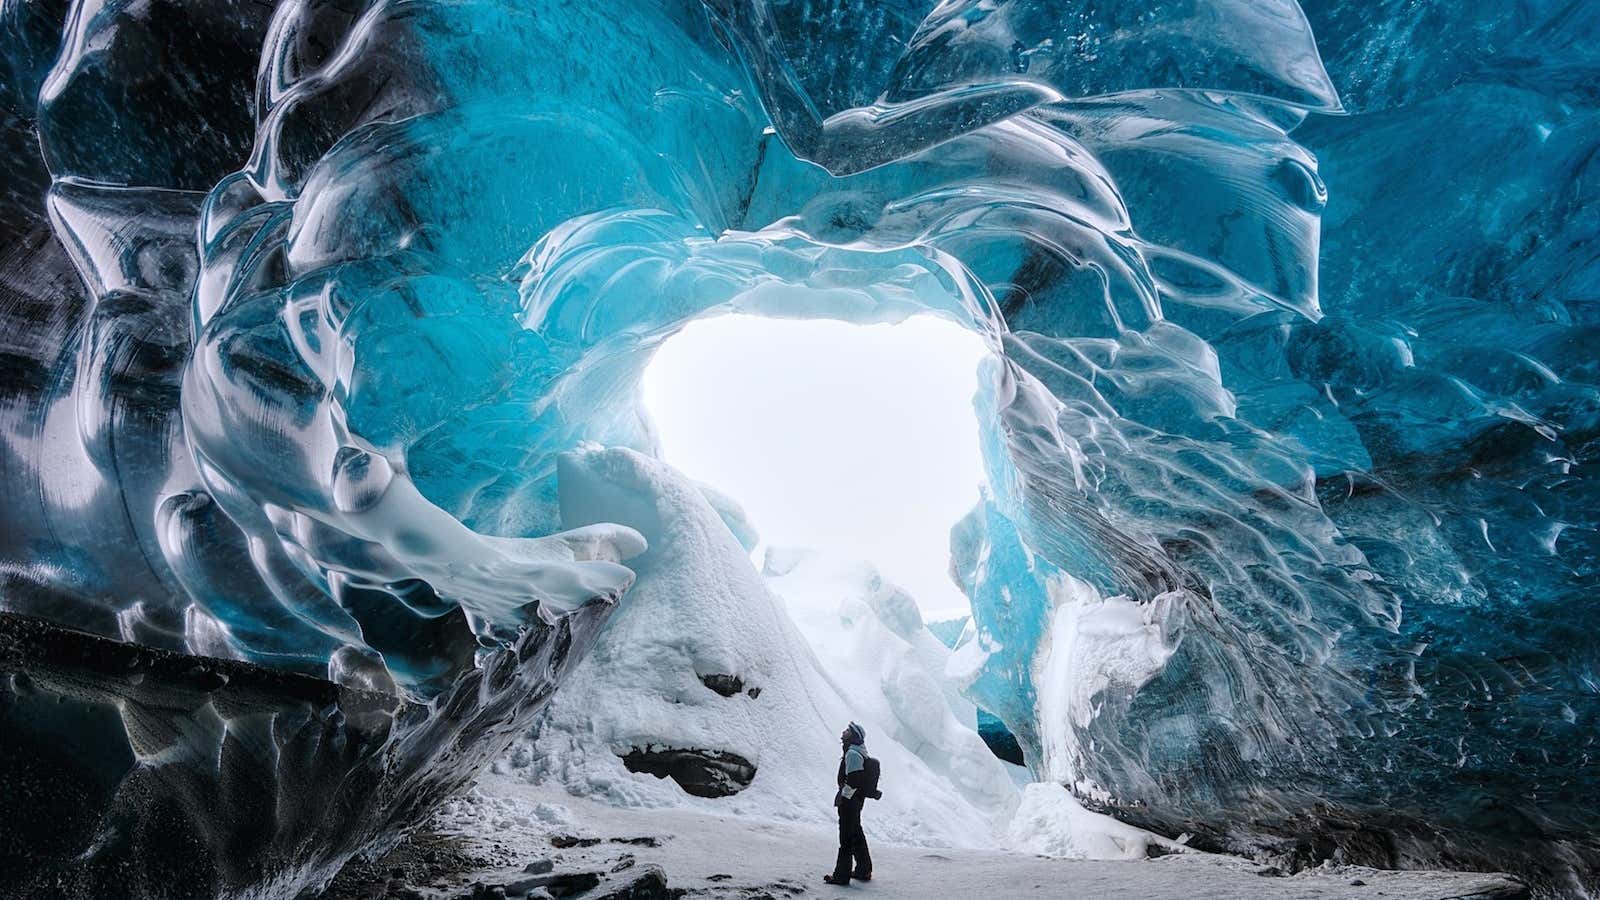 Ice cave at the Vatnajokull Glacier in Iceland.